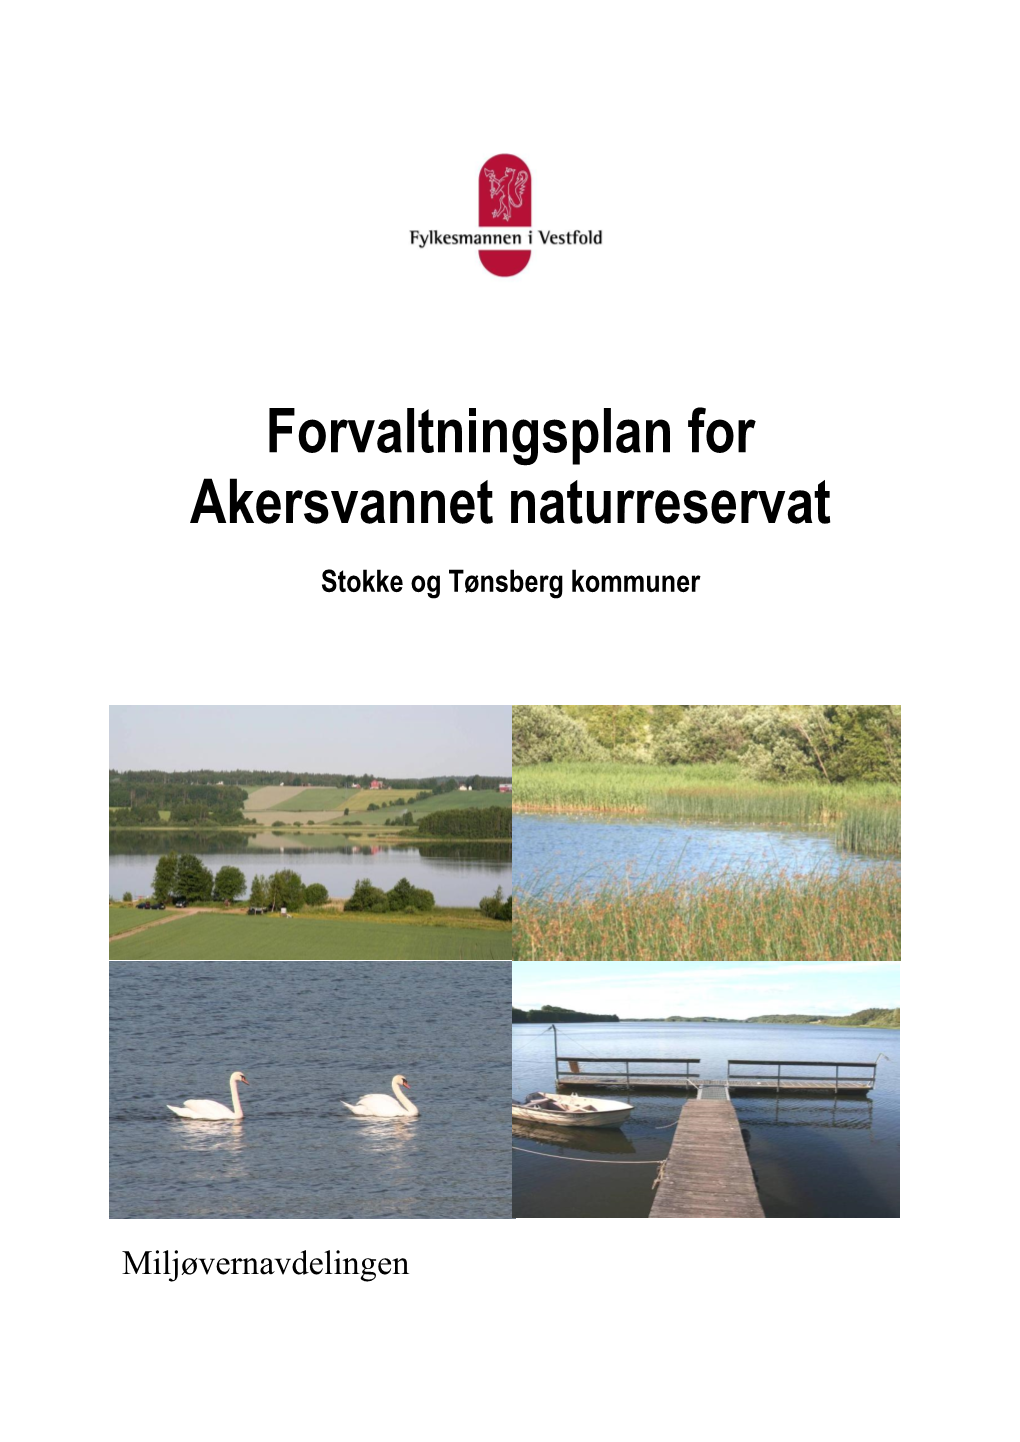 Forvaltningsplan for Akersvannet Naturreservat